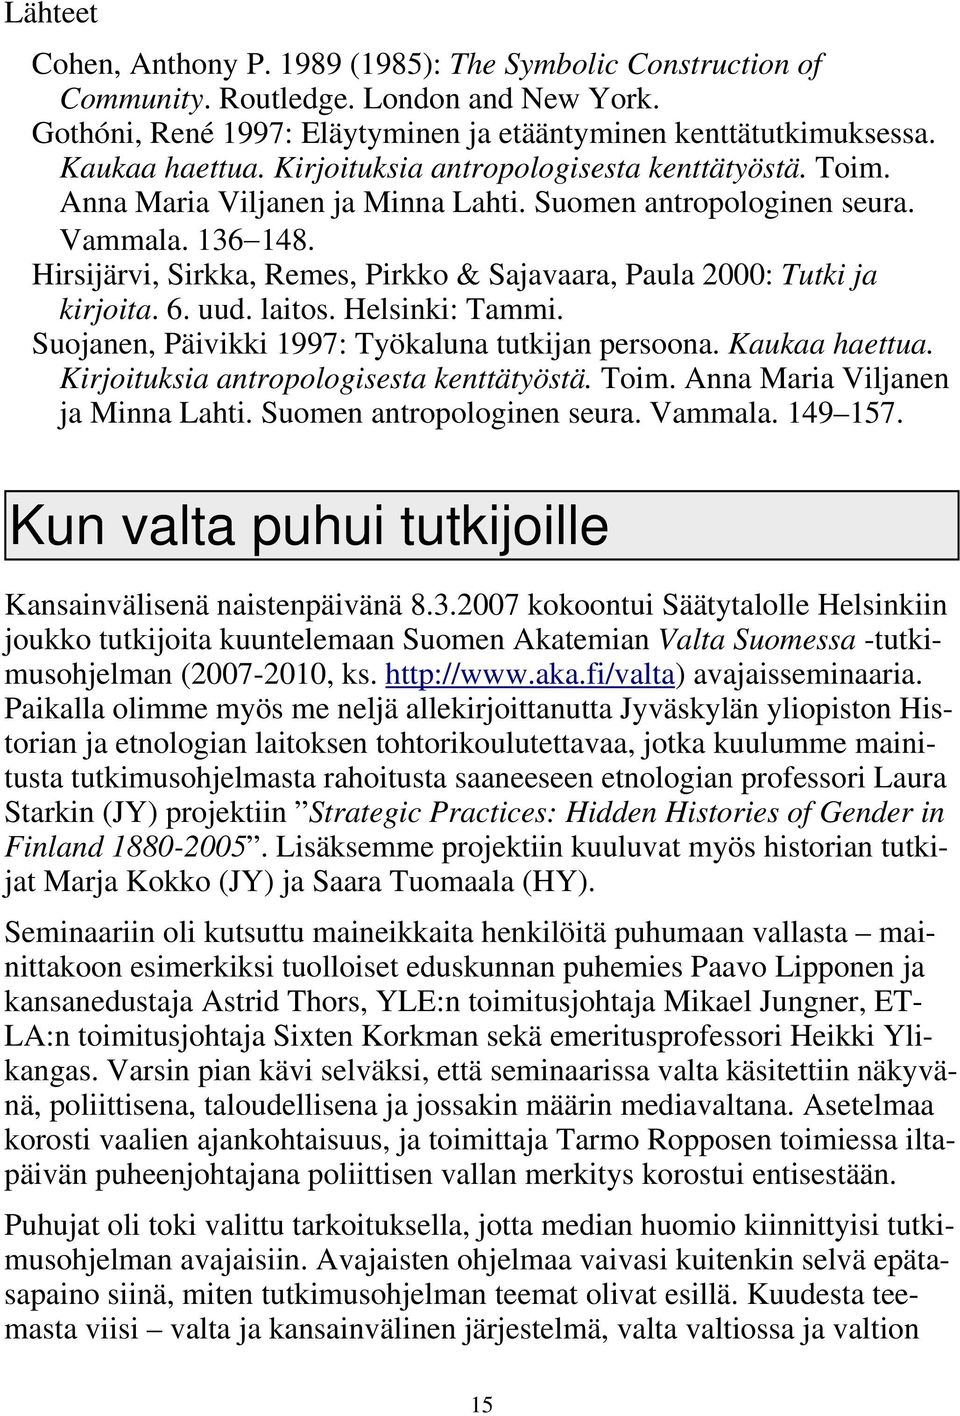 Hirsijärvi, Sirkka, Remes, Pirkko & Sajavaara, Paula 2000: Tutki ja kirjoita. 6. uud. laitos. Helsinki: Tammi. Suojanen, Päivikki 1997: Työkaluna tutkijan persoona. Kaukaa haettua.